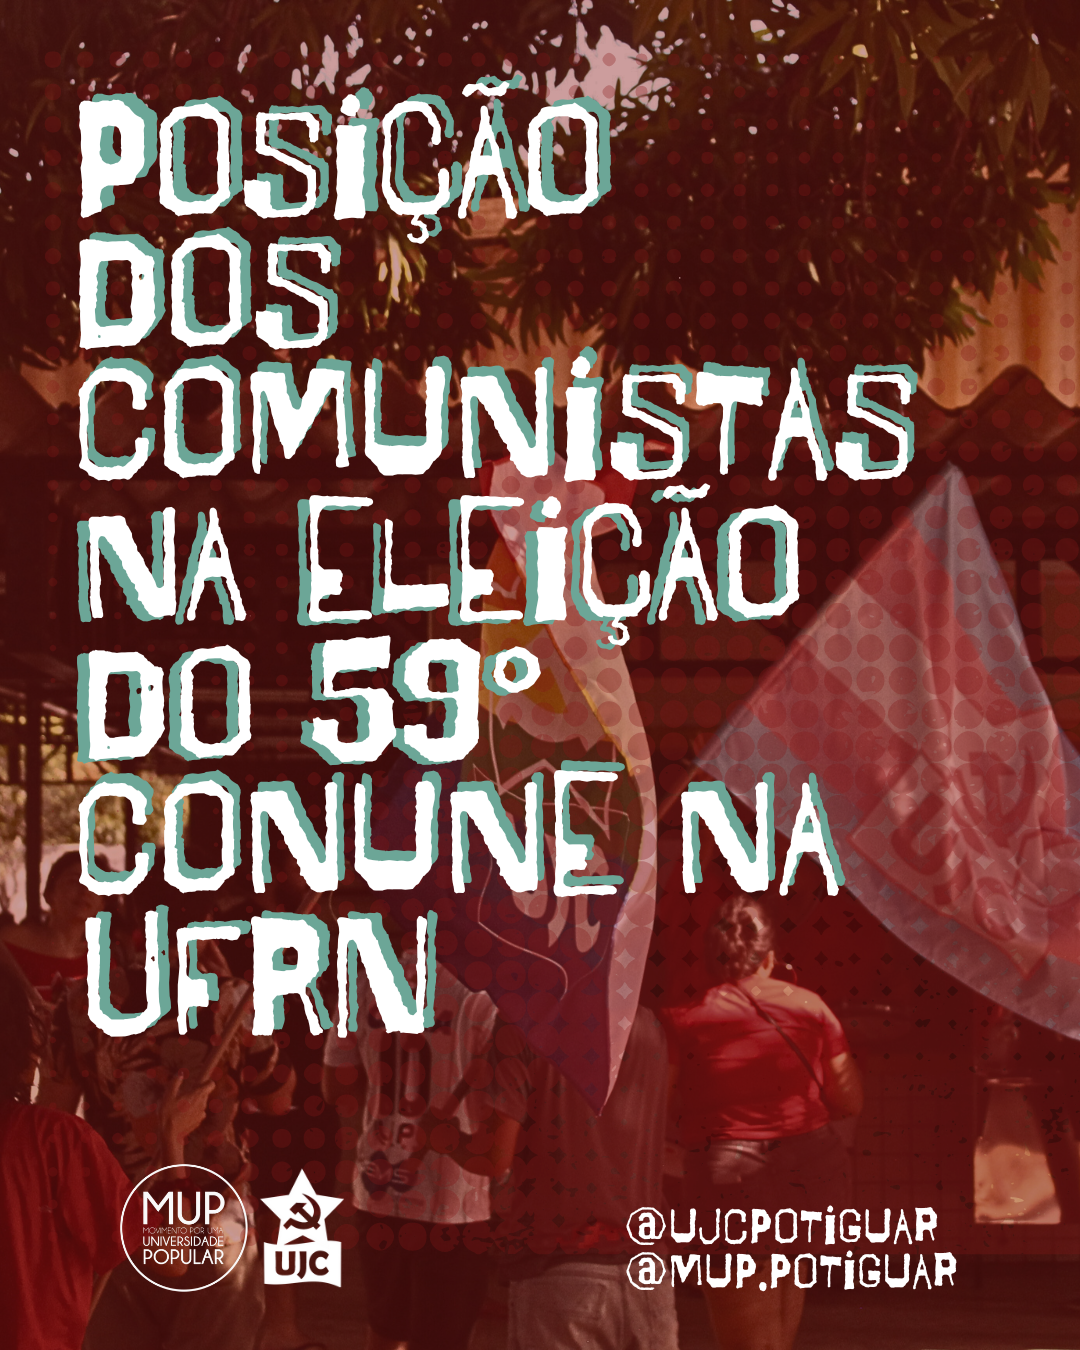 Nota Política UJC RN – Posição dos comunistas na eleição do 59° CONUNE na UFRN: Por uma UNE na pela Universidade Popular na construção do socialismo!